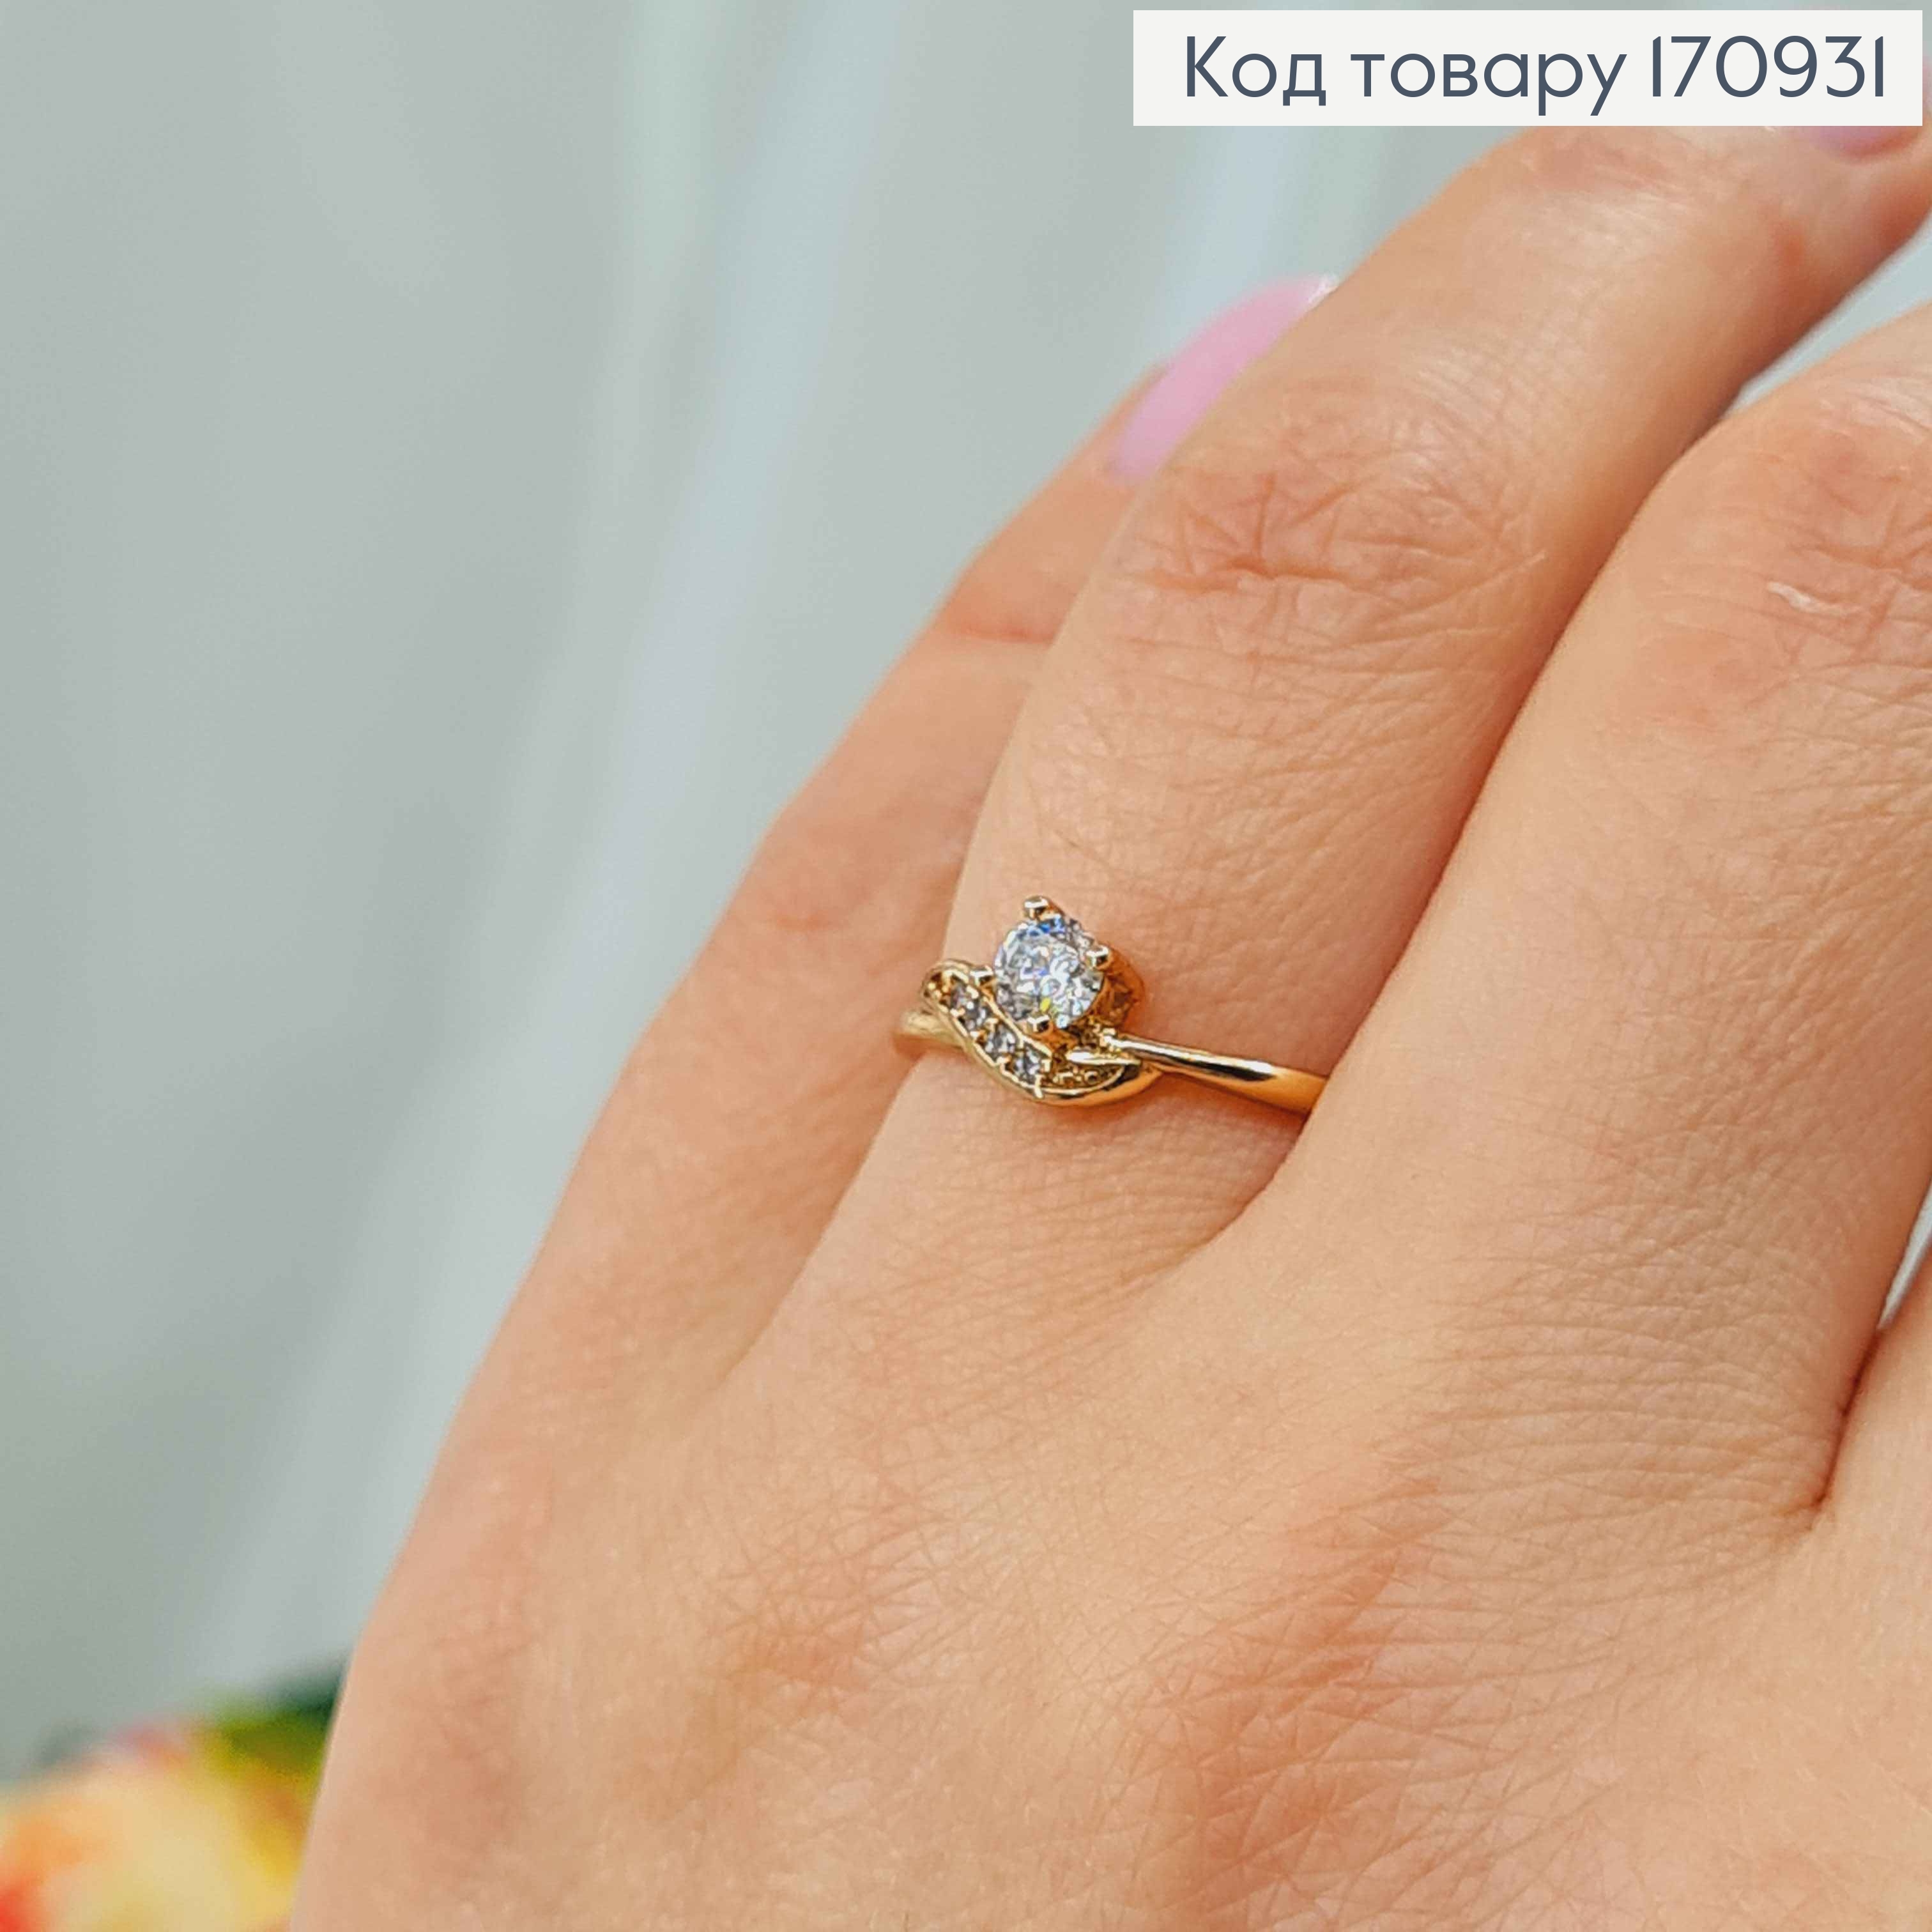 Перстень, Хвиля з круглим камінцем, Xuping 18К 170931 фото 2